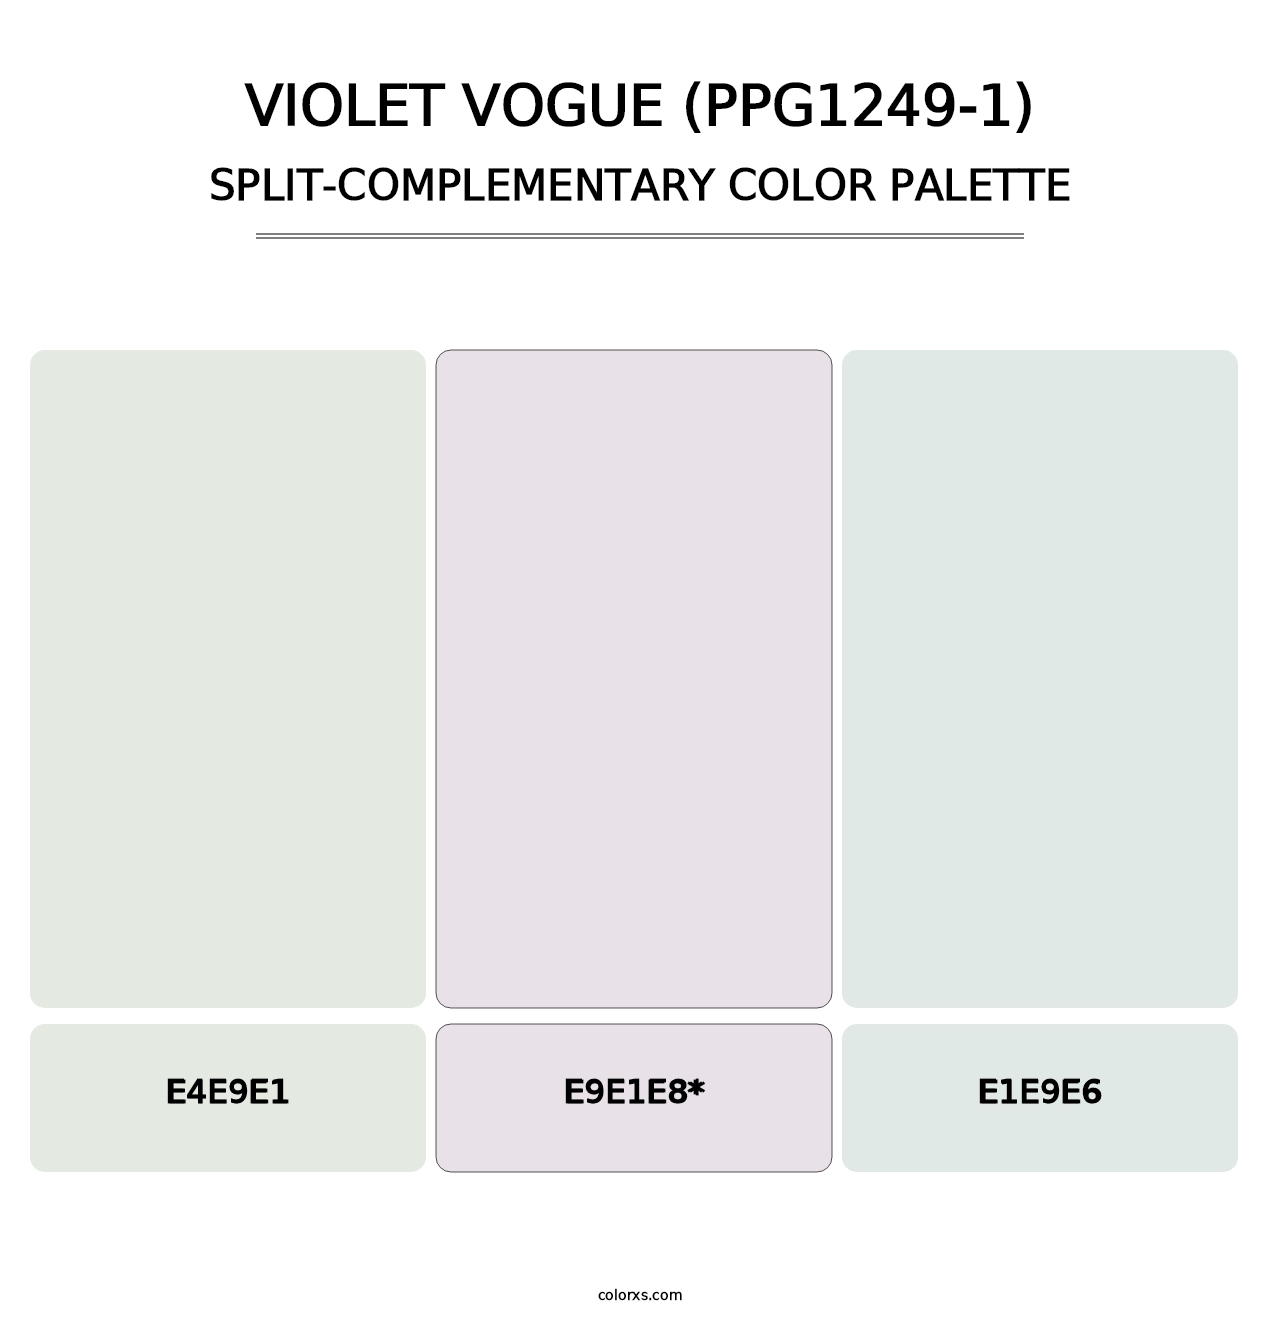 Violet Vogue (PPG1249-1) - Split-Complementary Color Palette